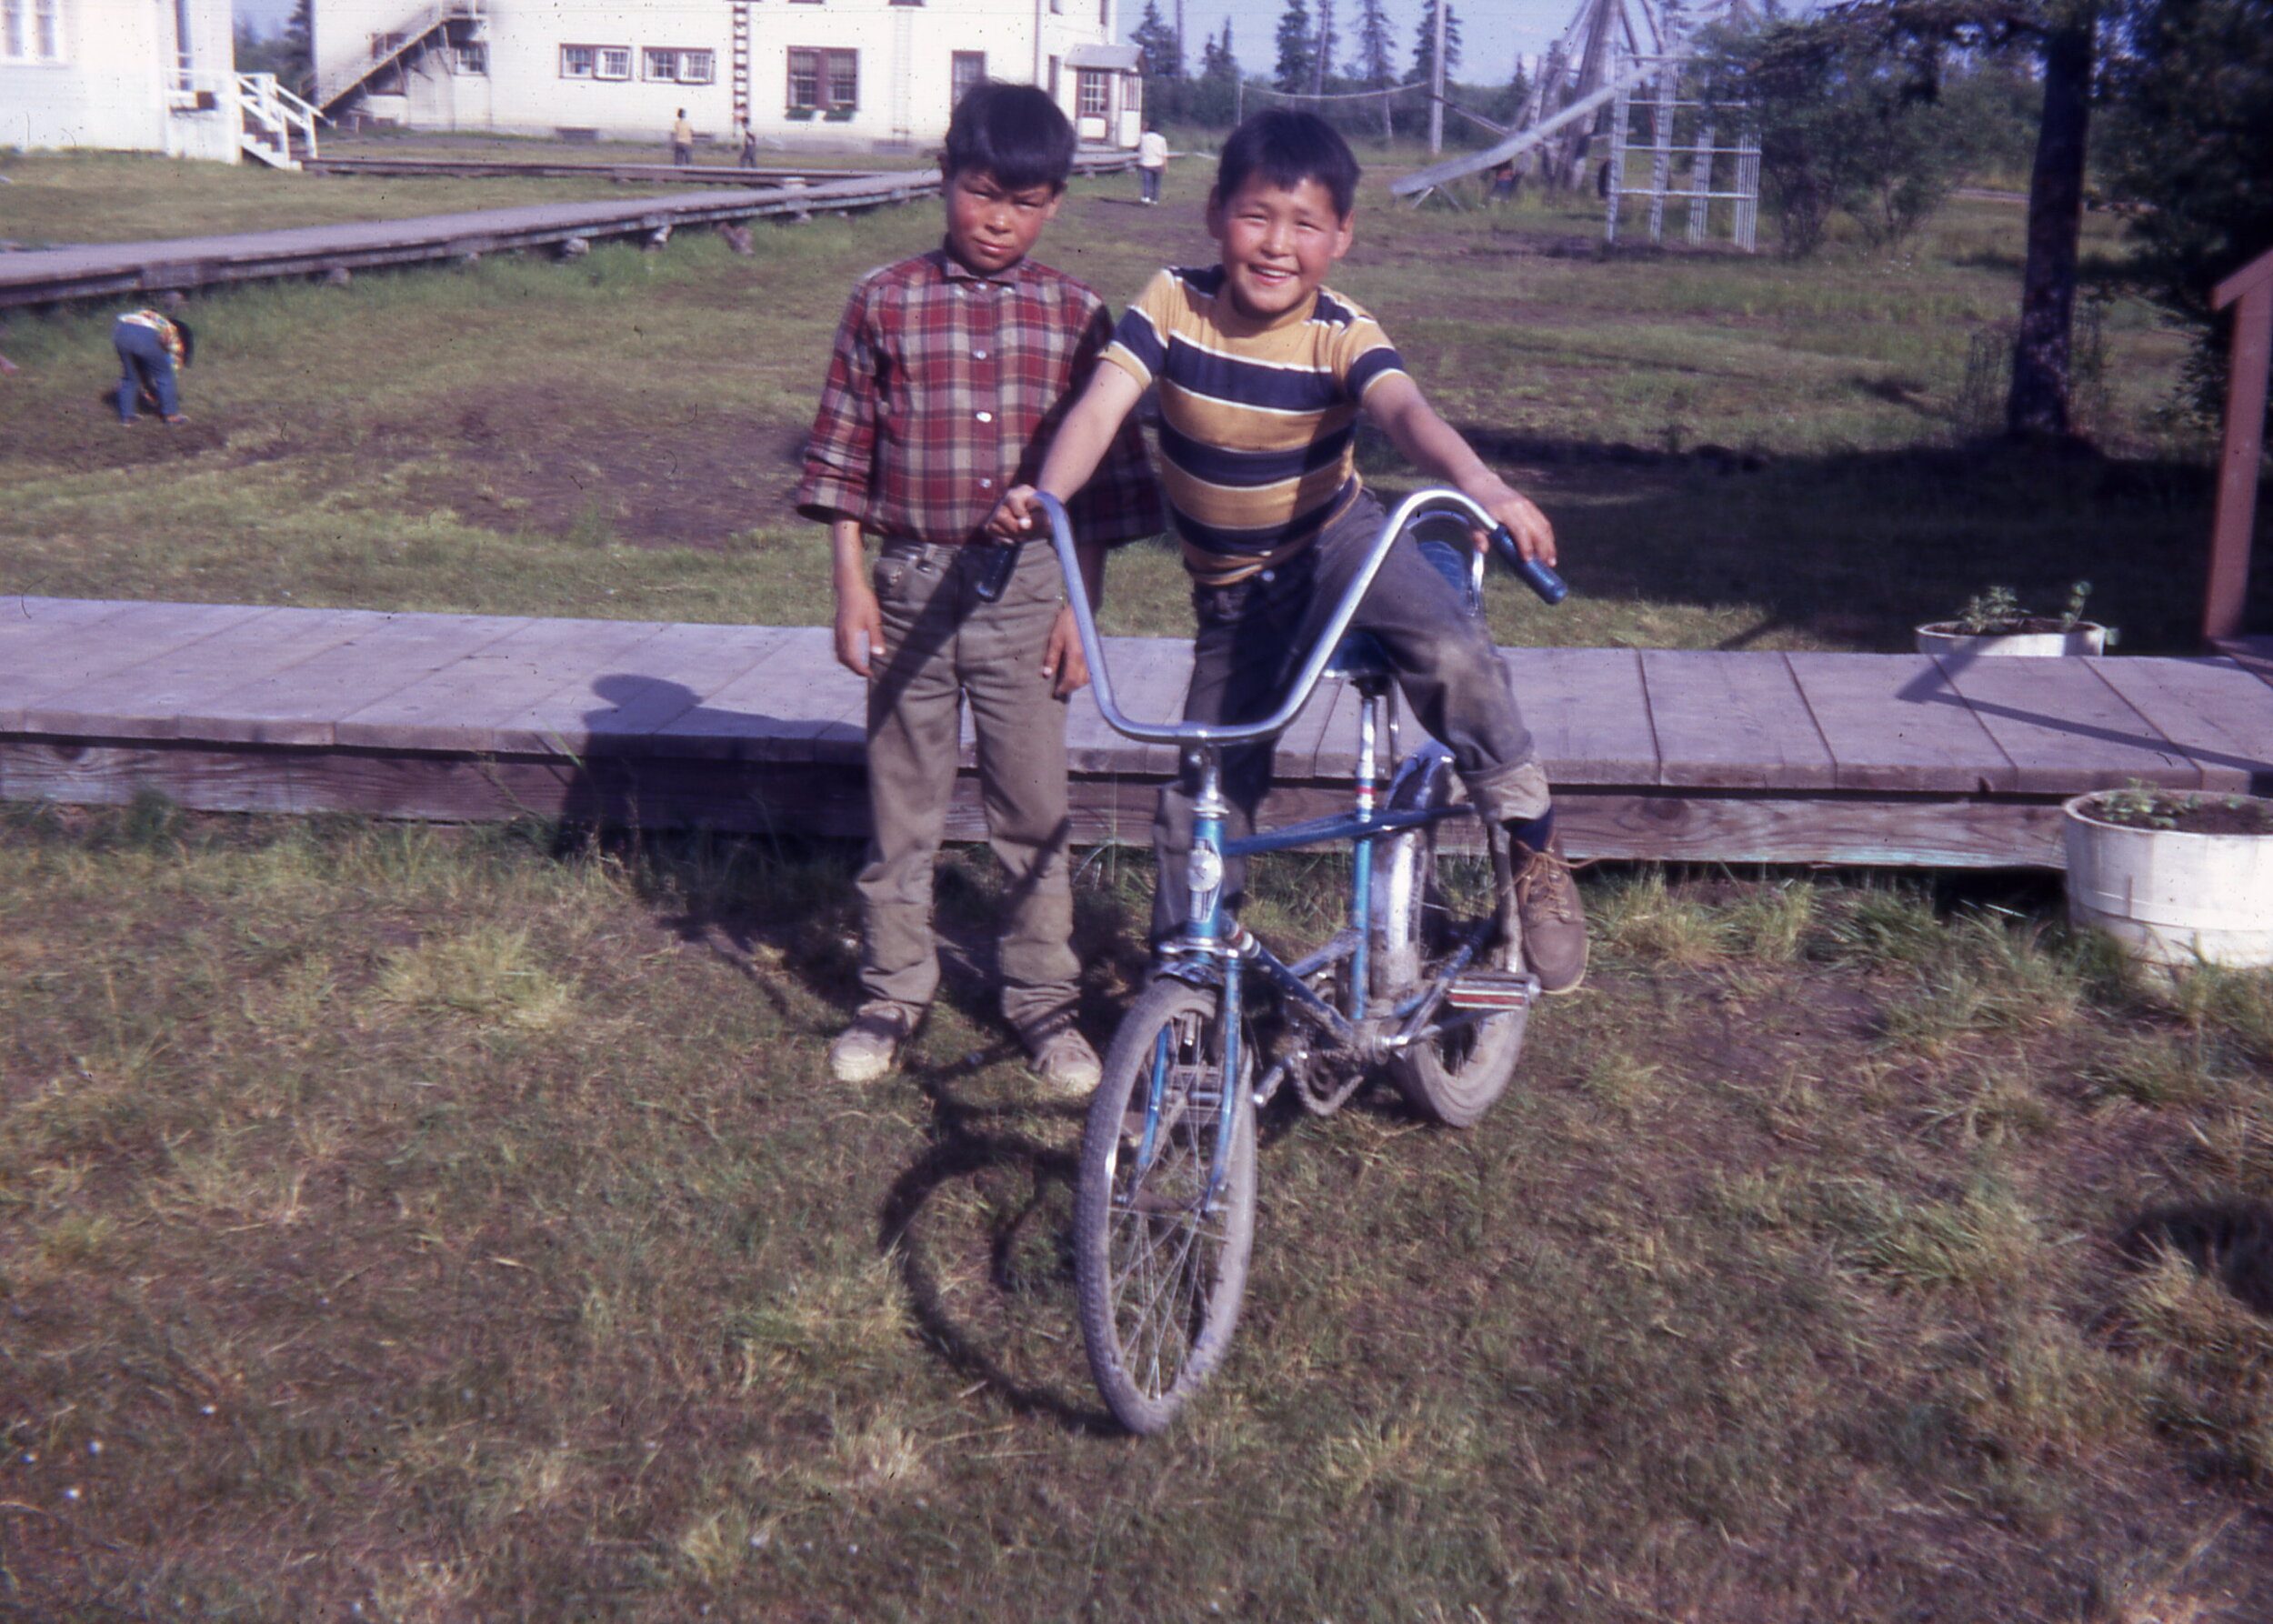 1971 Boys and bike.jpg